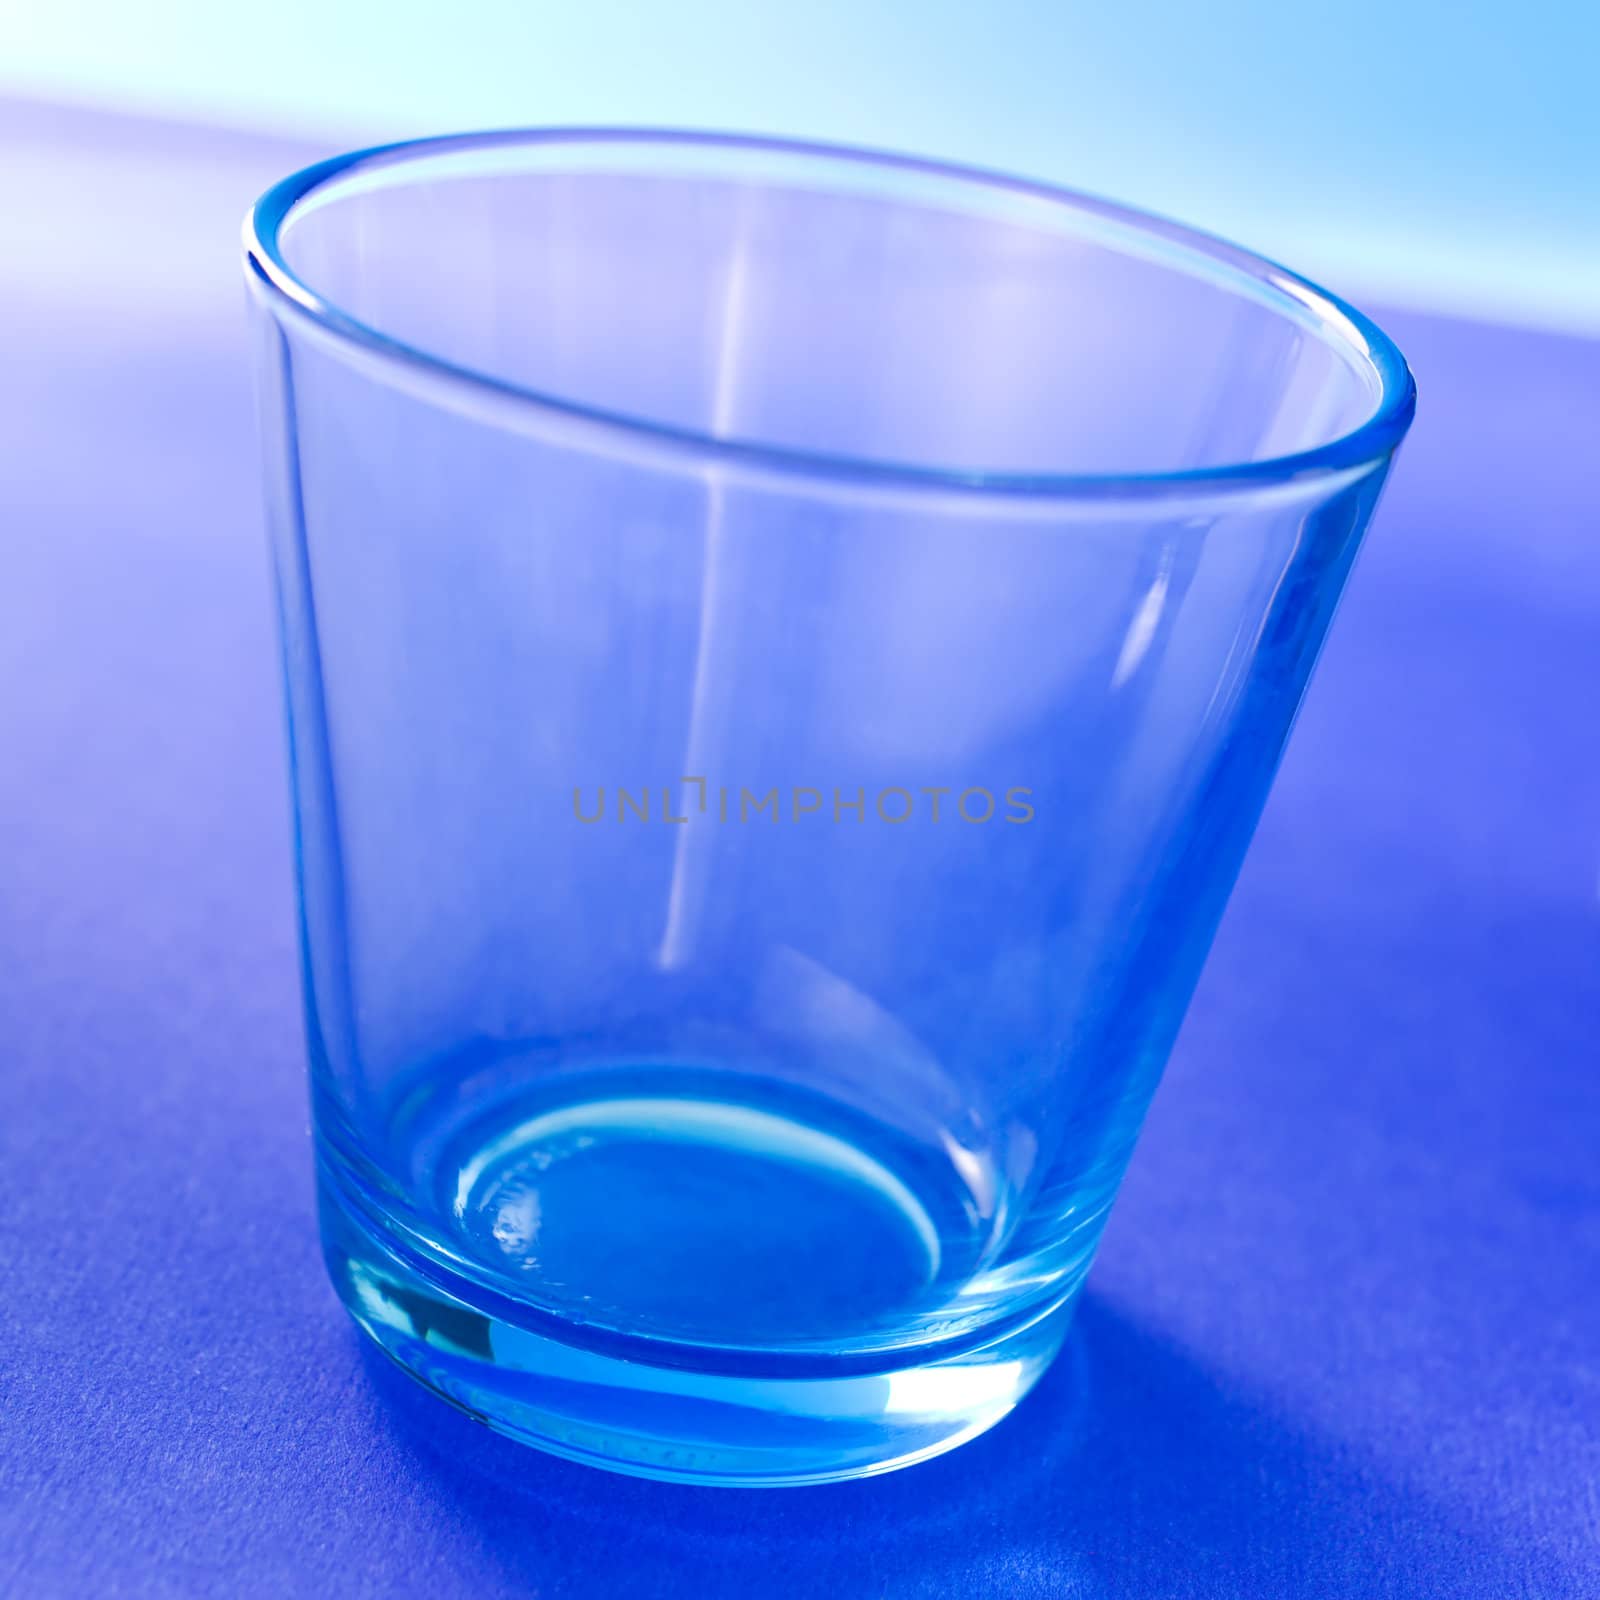 Empty glass by mjp